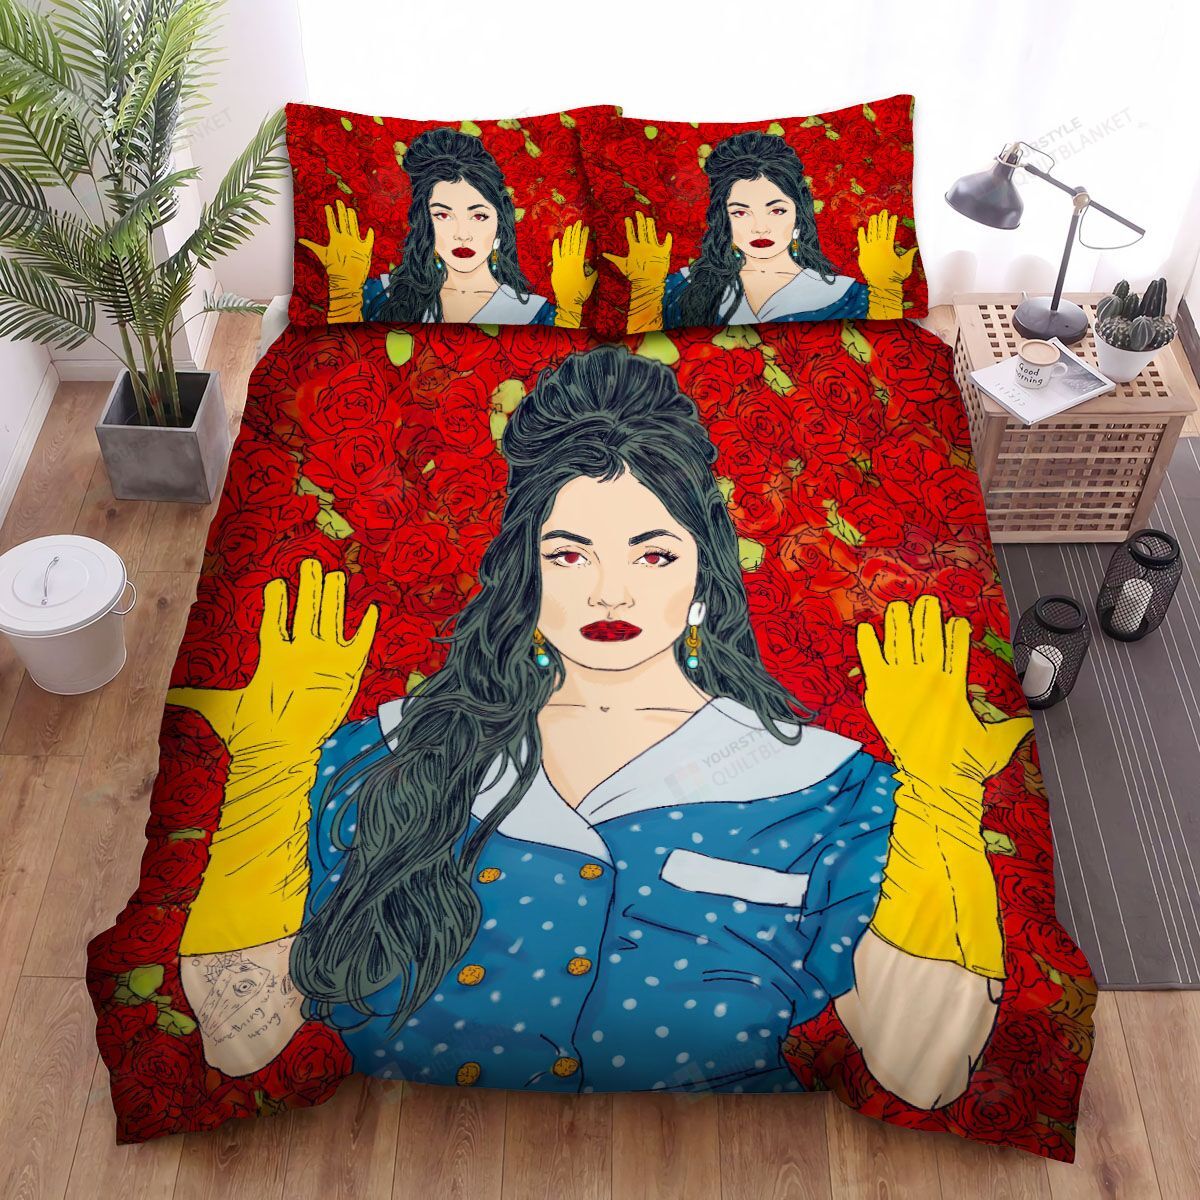 Mon Laferte Rose Background Bed Sheets Spread Comforter Duvet Cover Bedding Sets